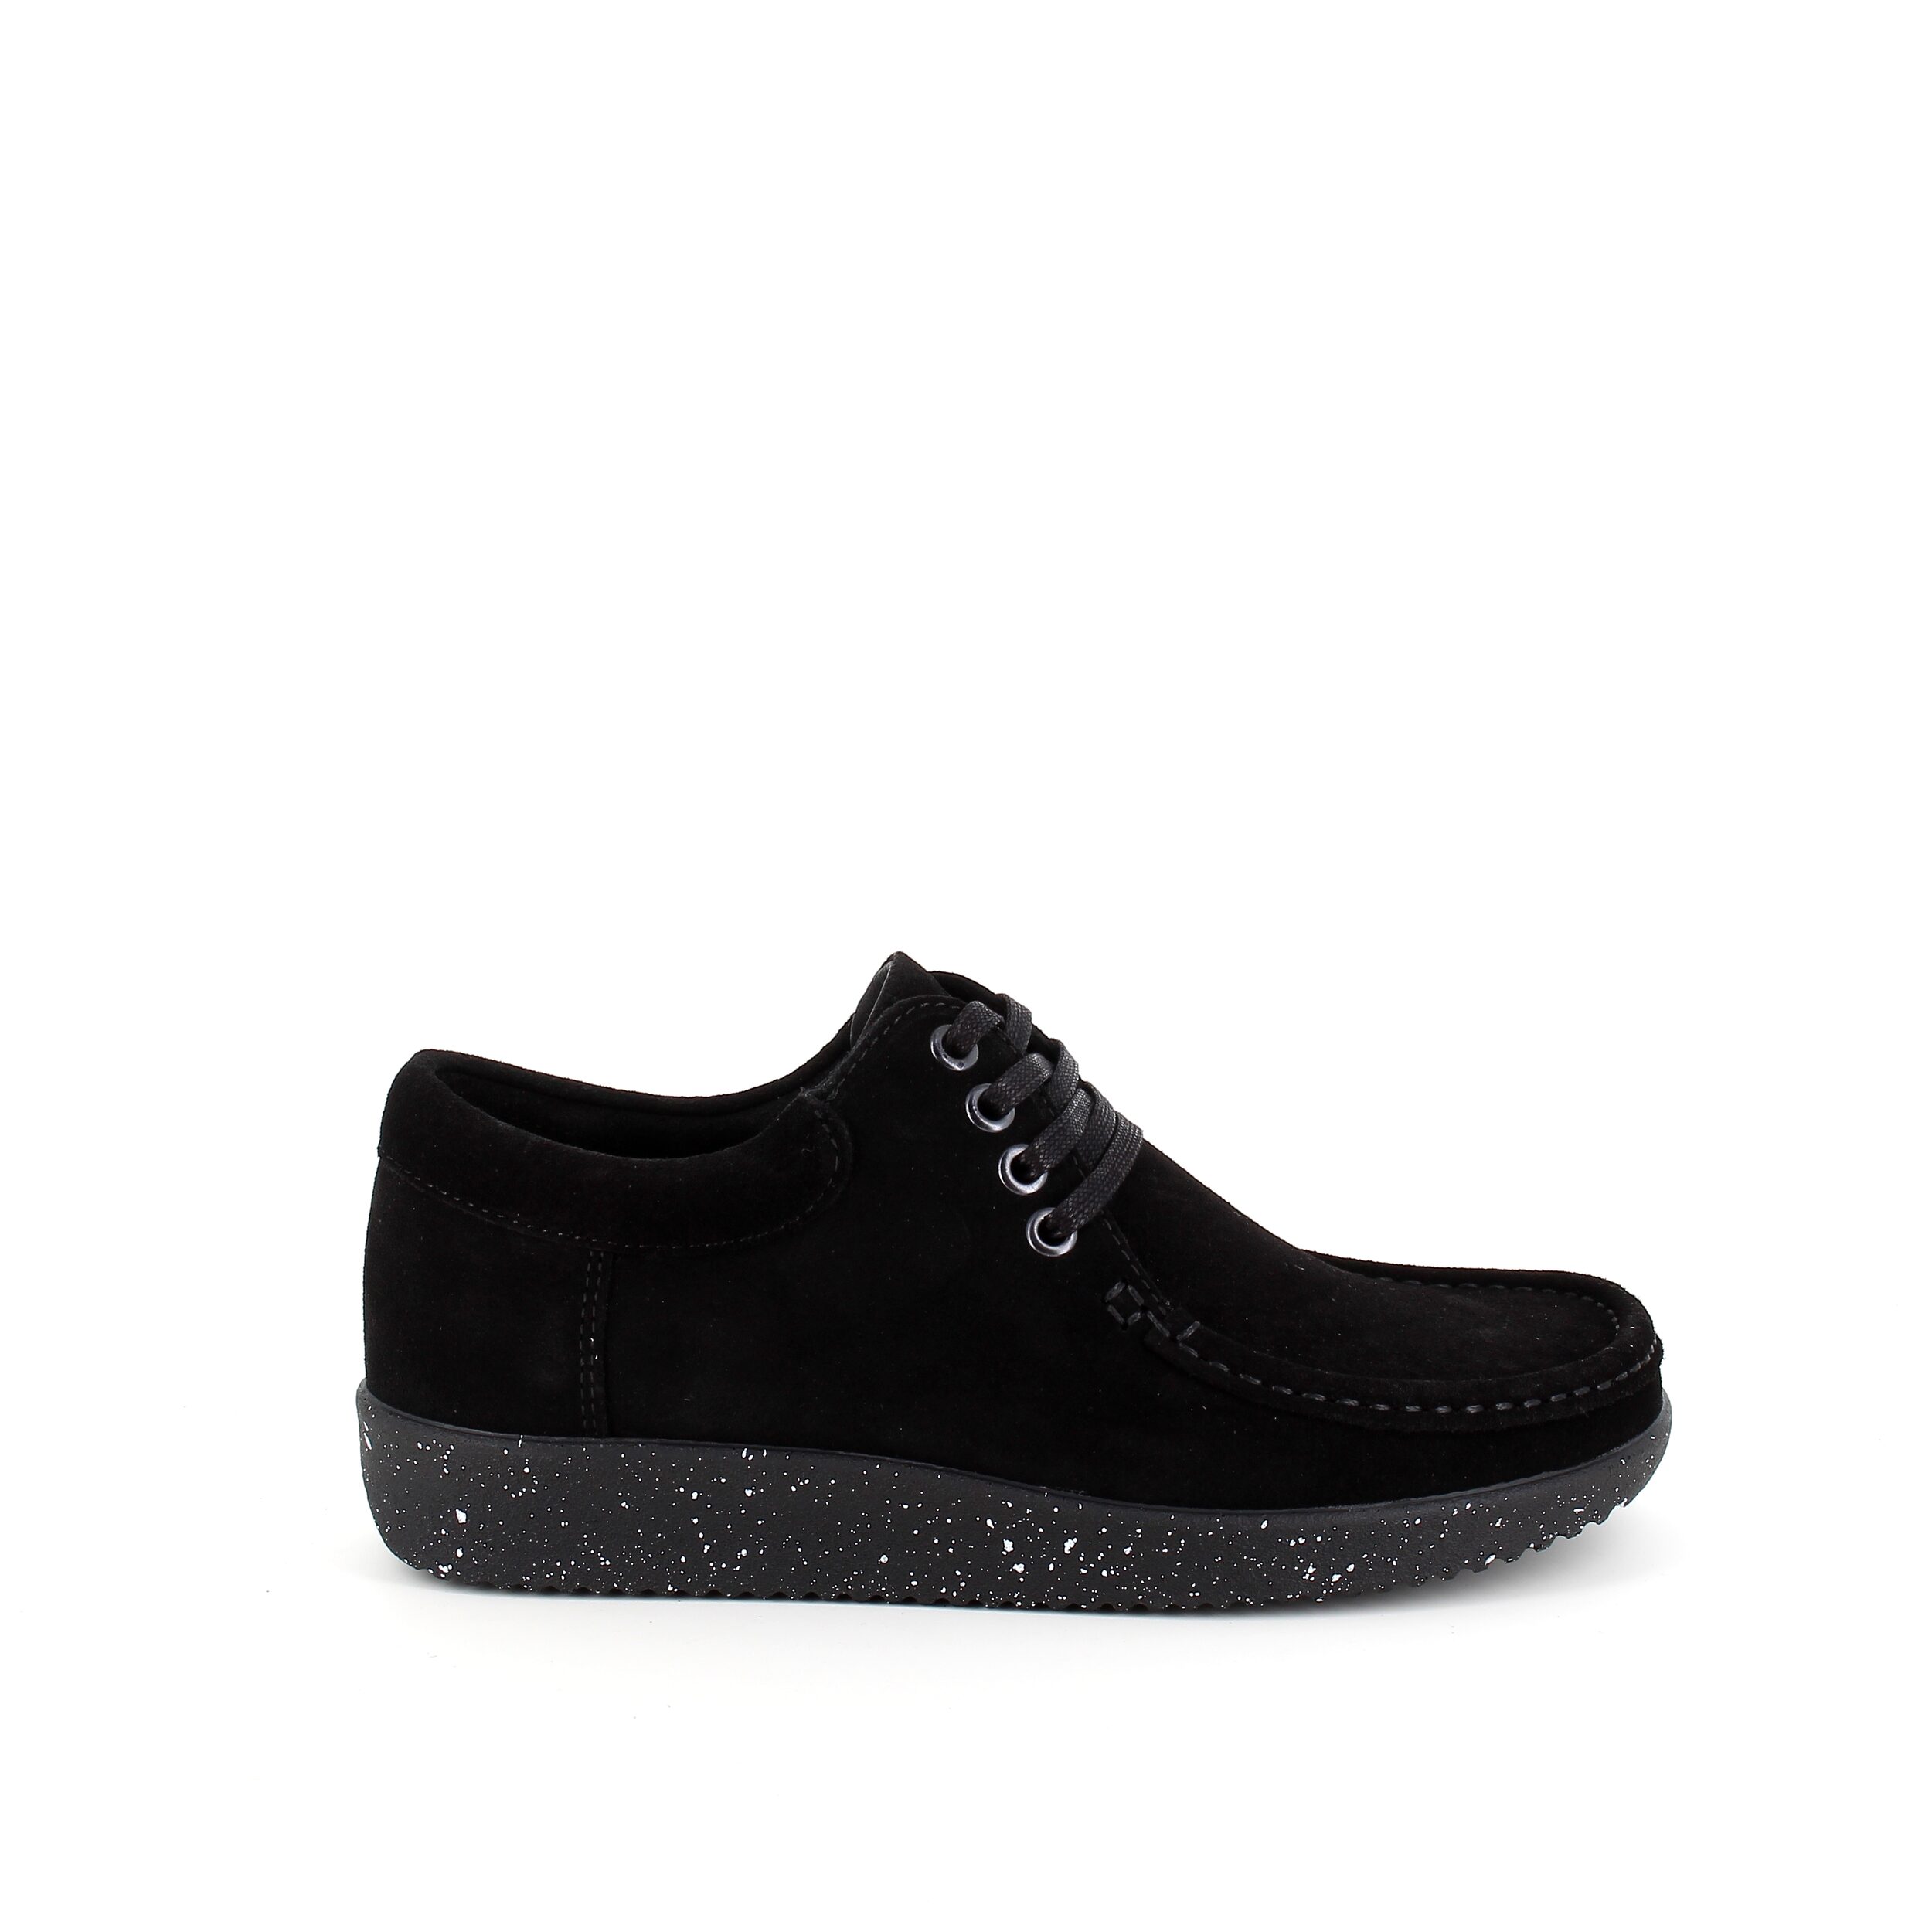 Se Nature sko i sort ruskind med hvide nister i sålen - 40 hos Sygeplejebutikken.dk